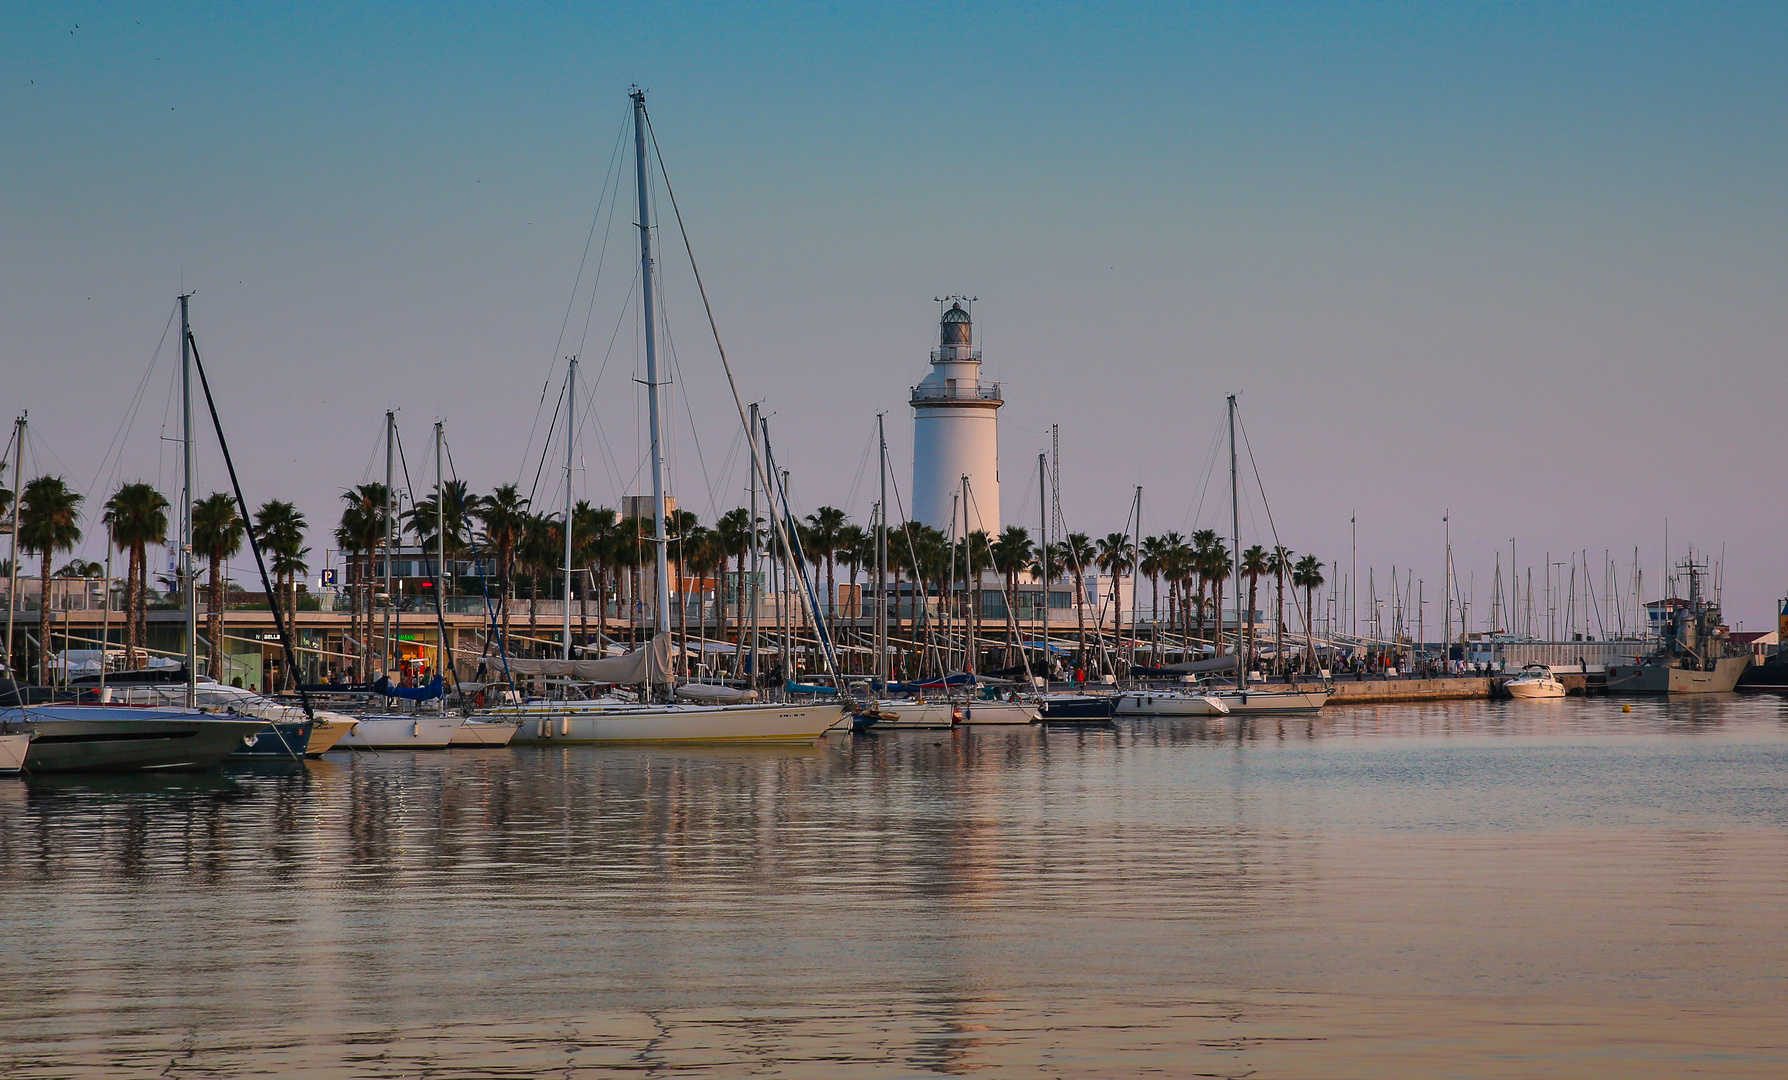 Malaga, Leuchtturm am Hafen etwas früher